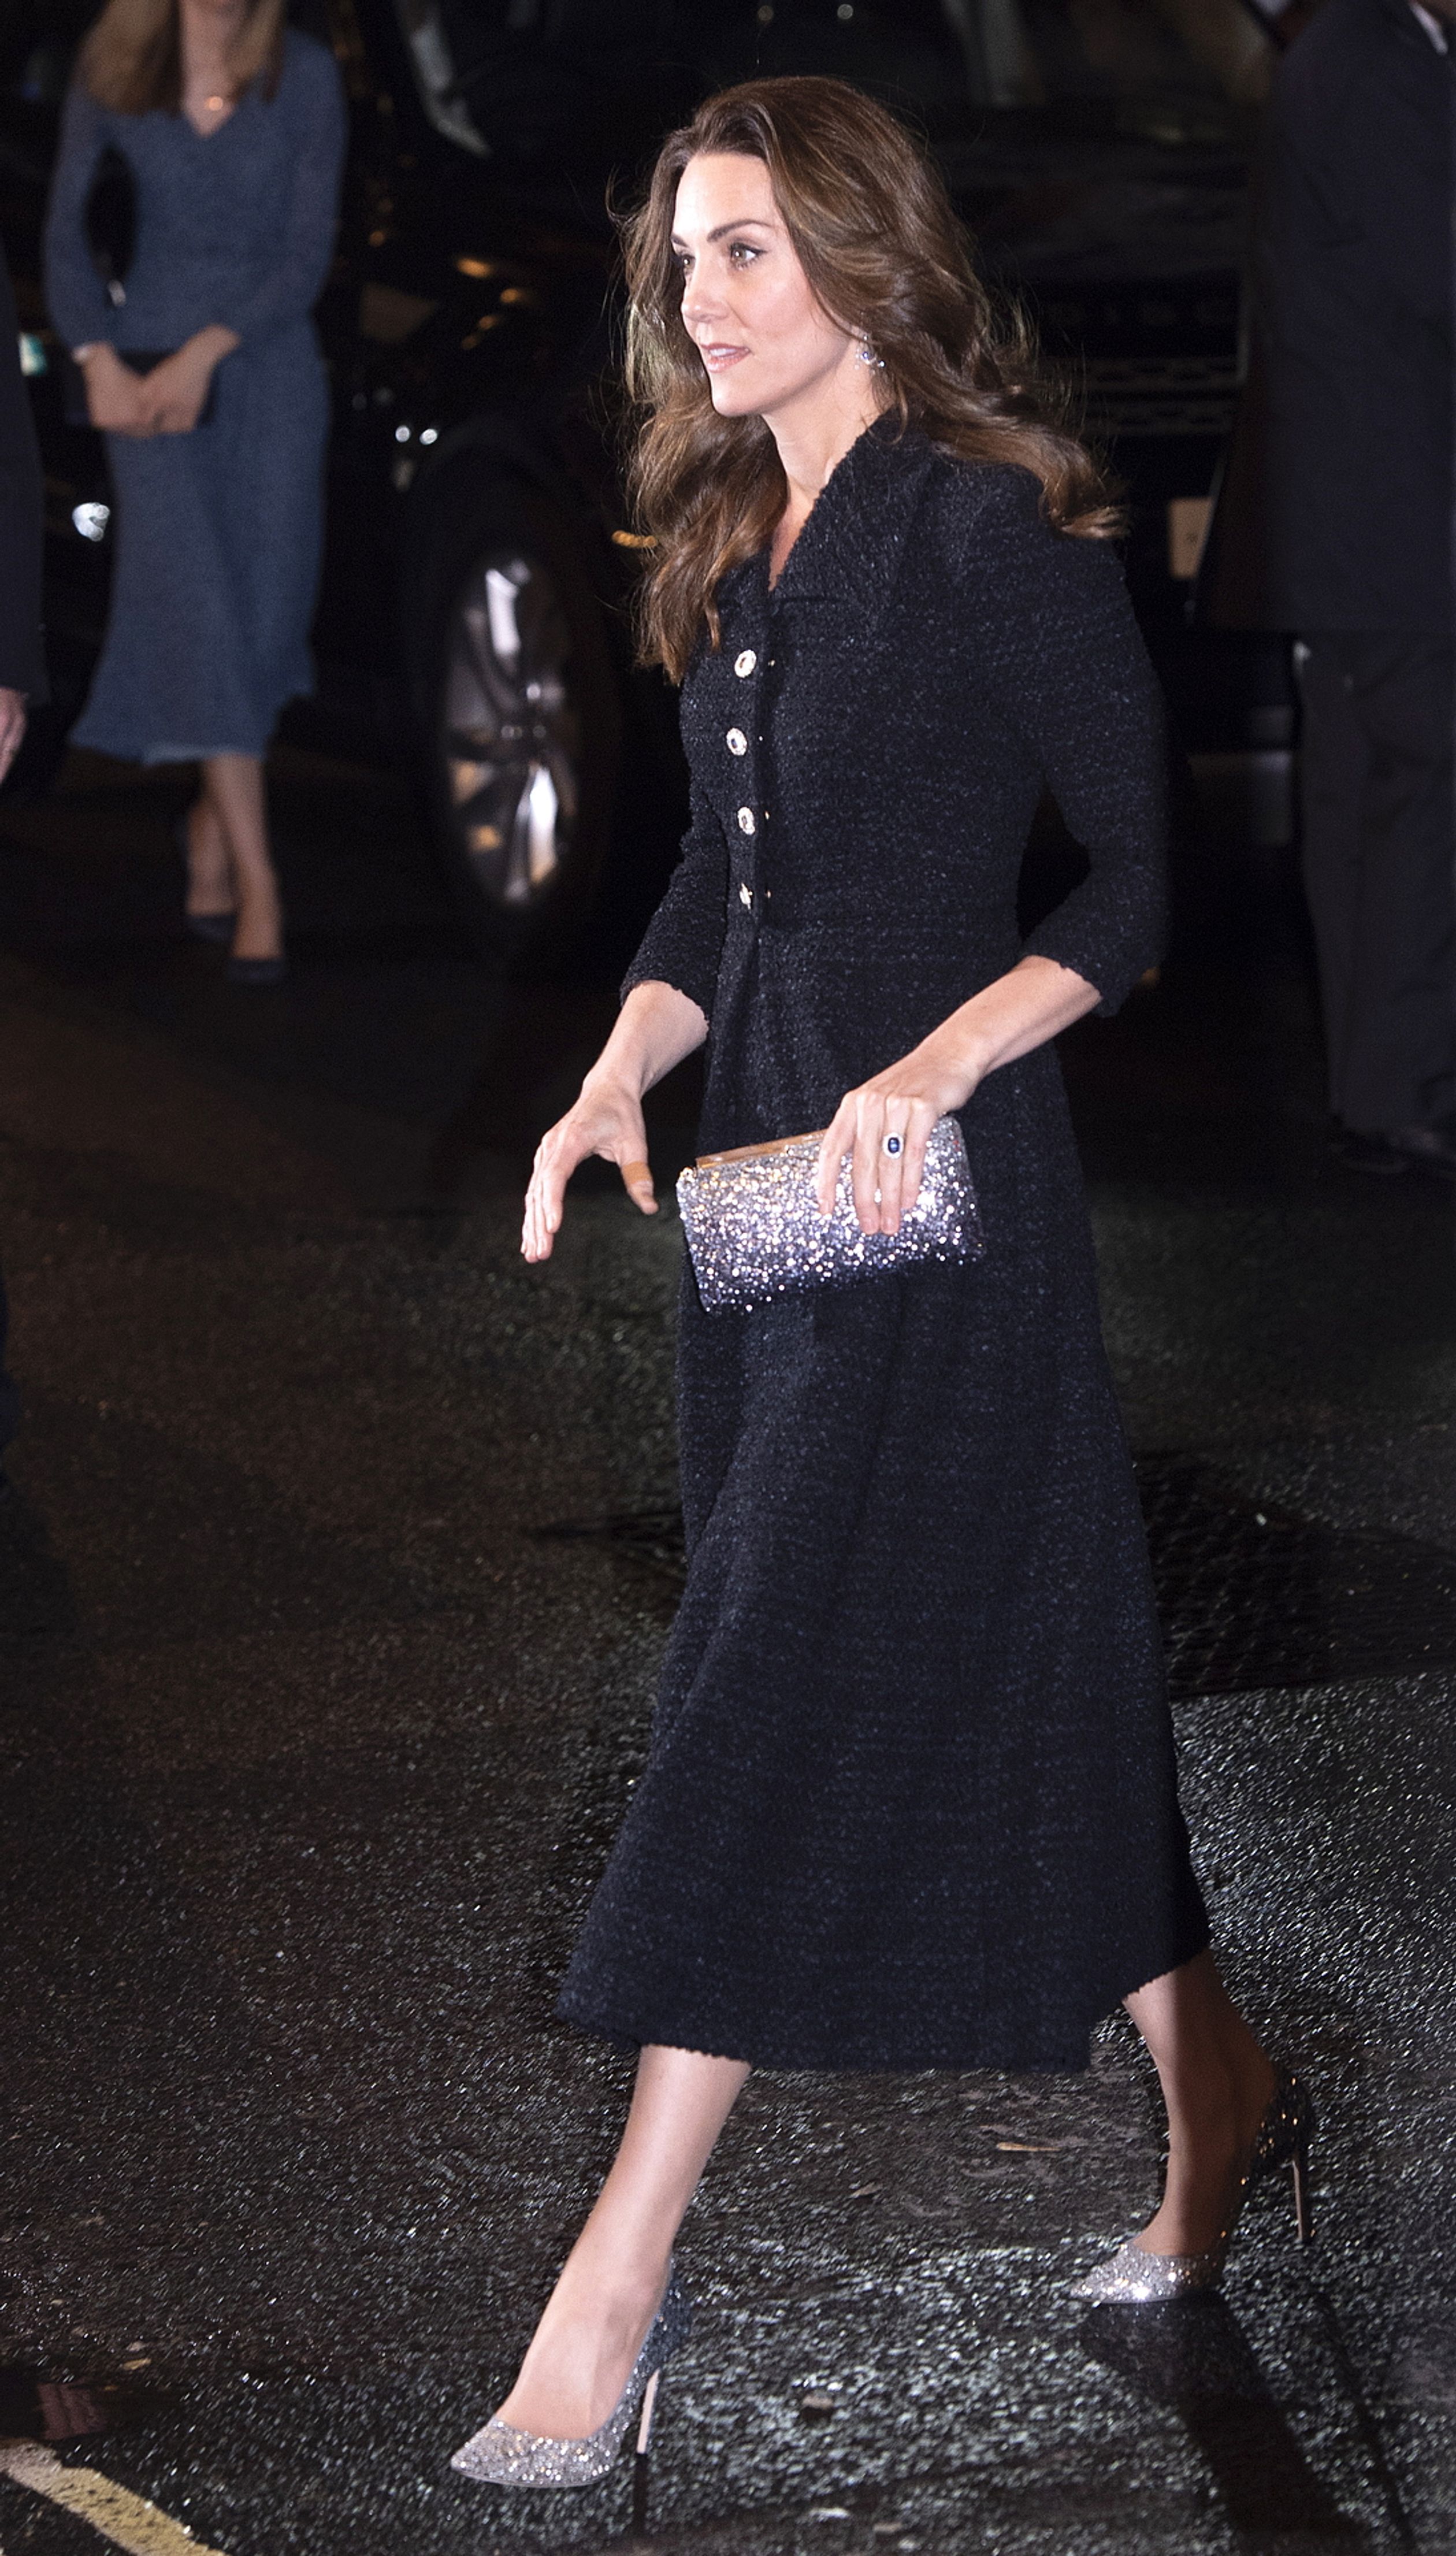 Catherine verschijnt in februari 2020 in een prachtige jurk van het merk Eponine, gecombineerd met